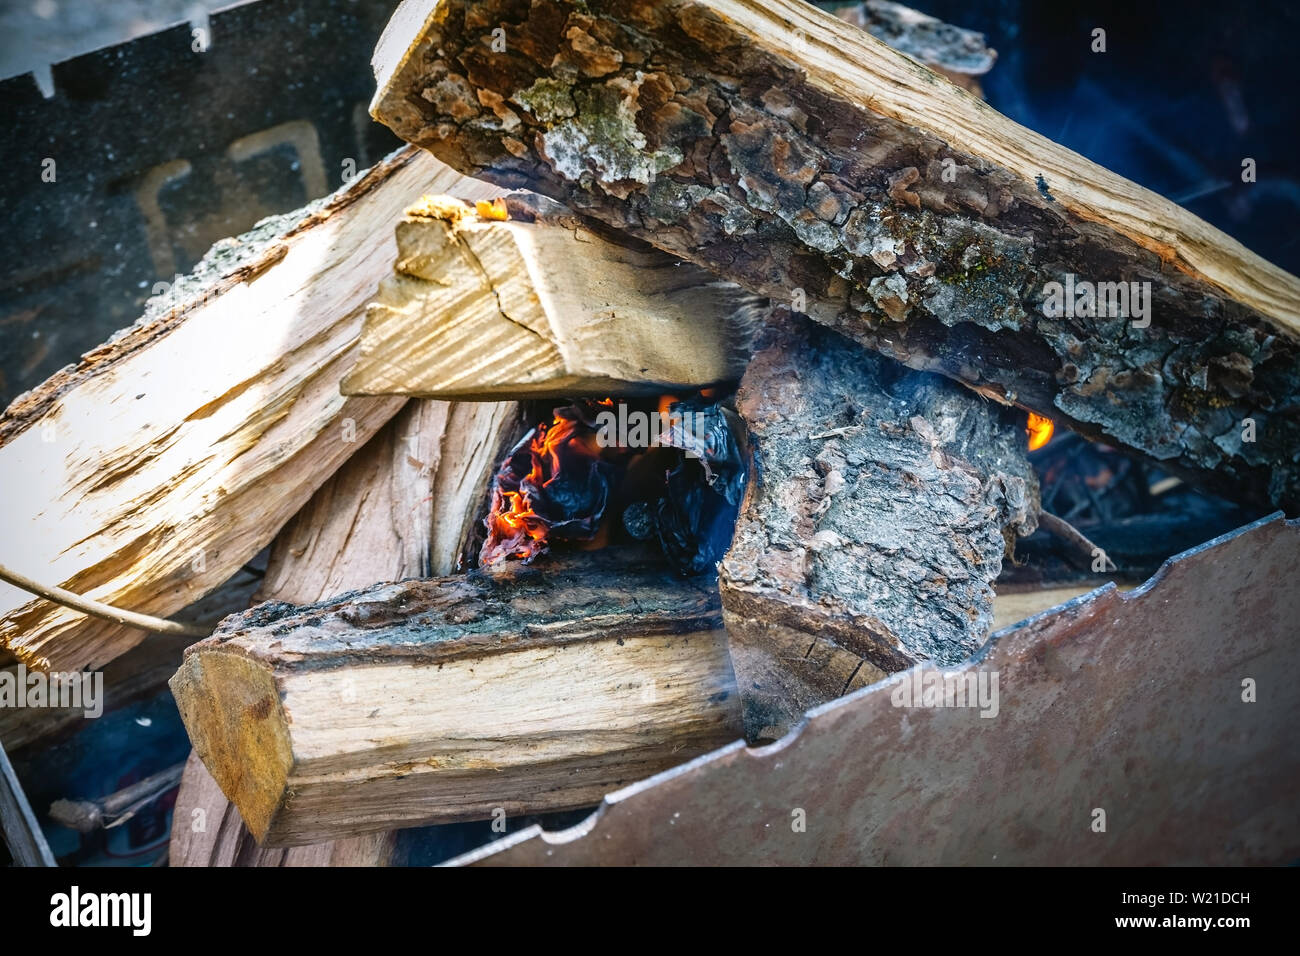 Nur er aber nahm das Feuer unter den Holz - Feuer im Grill, erschienen. Stockfoto